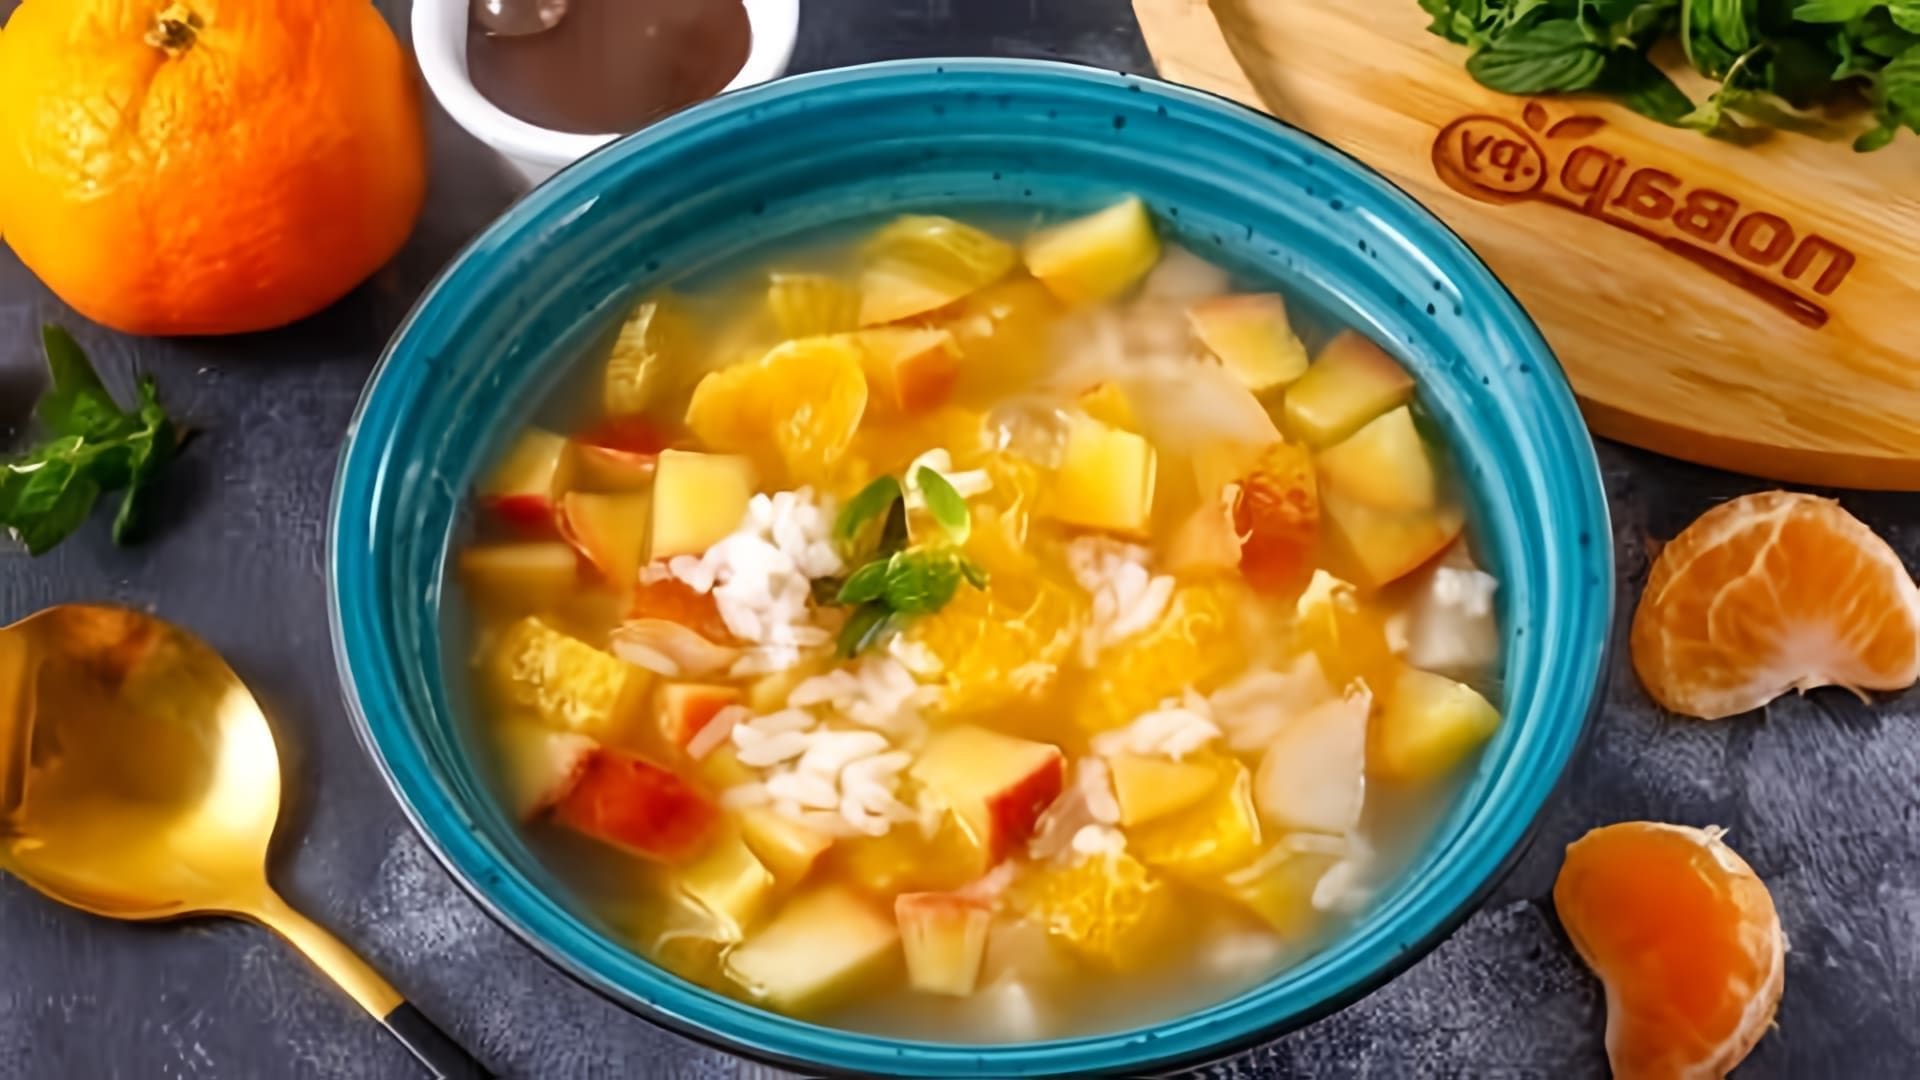 В этом видео демонстрируется рецепт приготовления фруктового супа с рисом